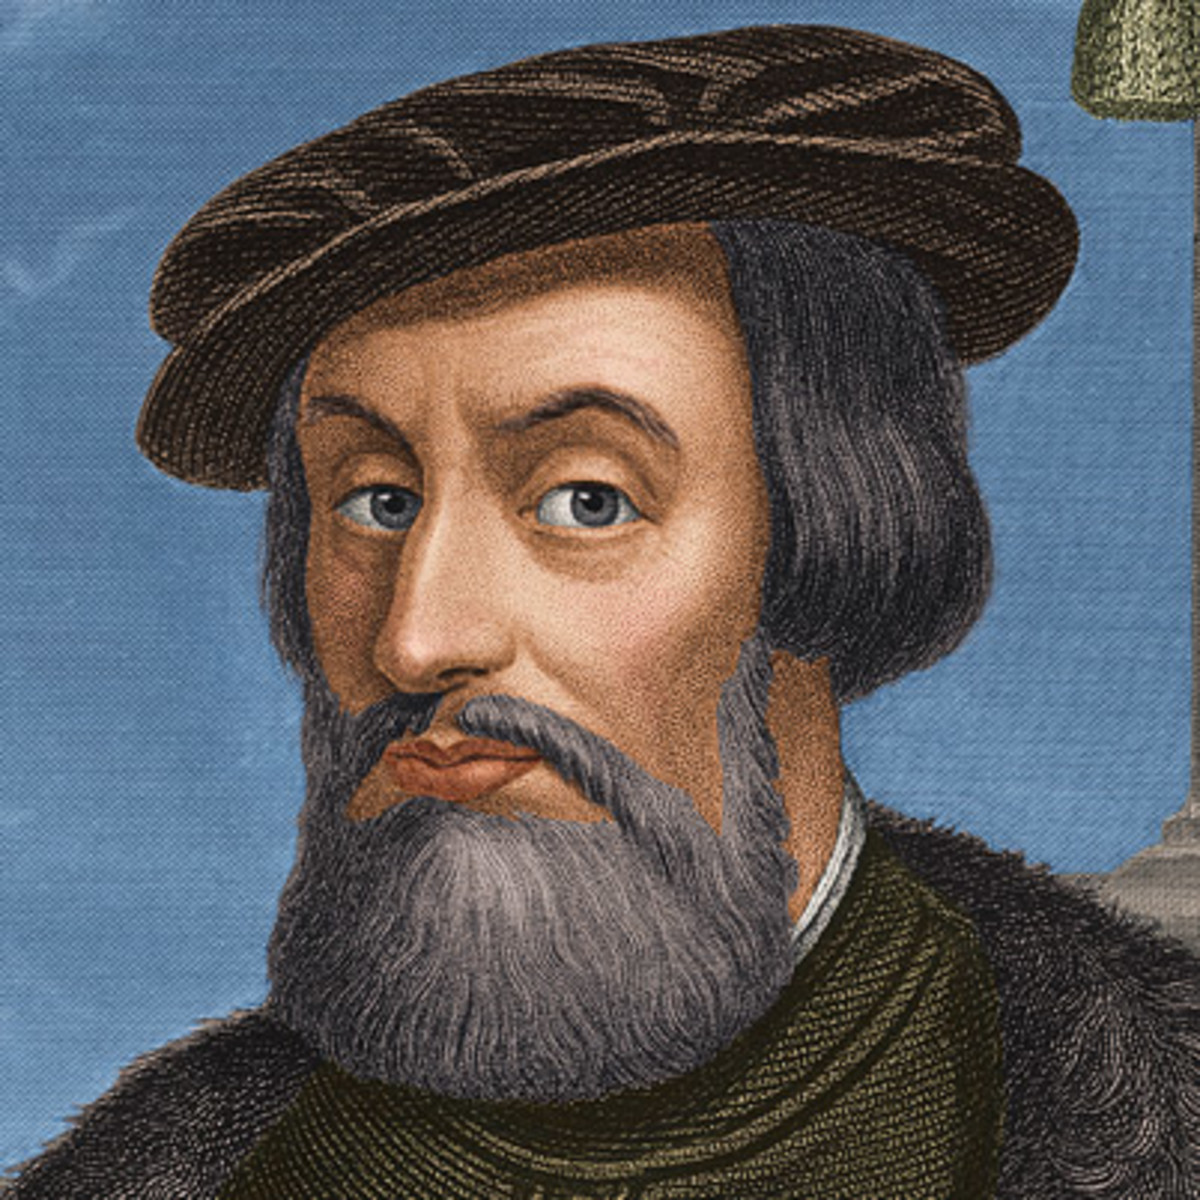  Biografía de Hernán Cortés